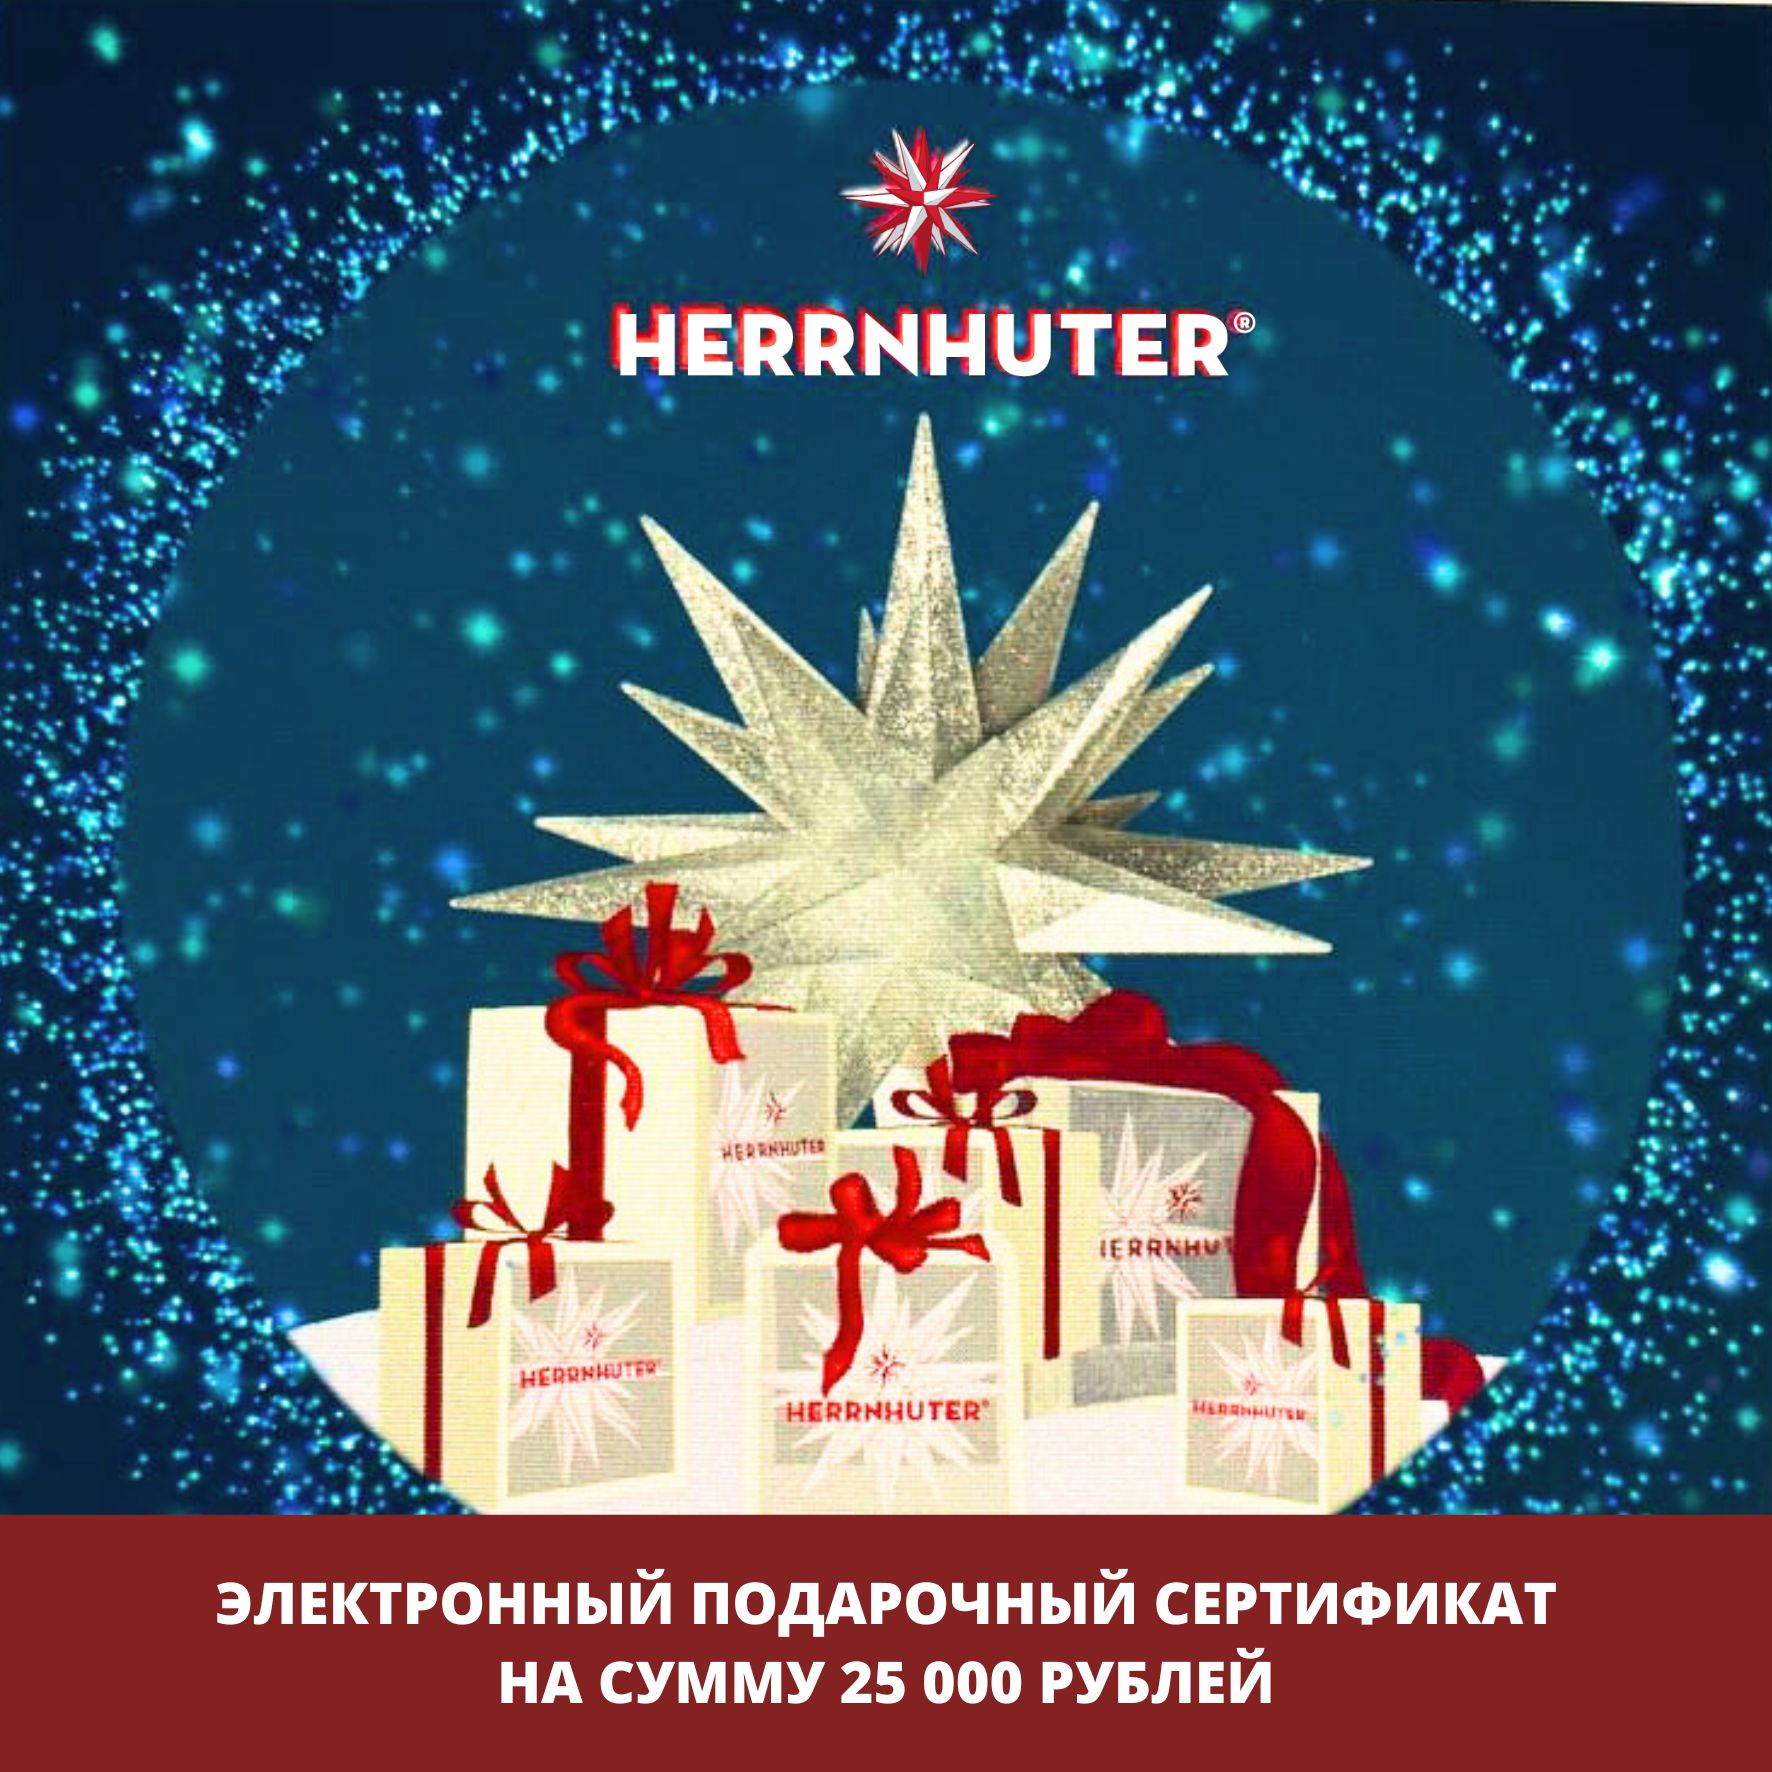 Электронный подарочный сертификат 25000 руб